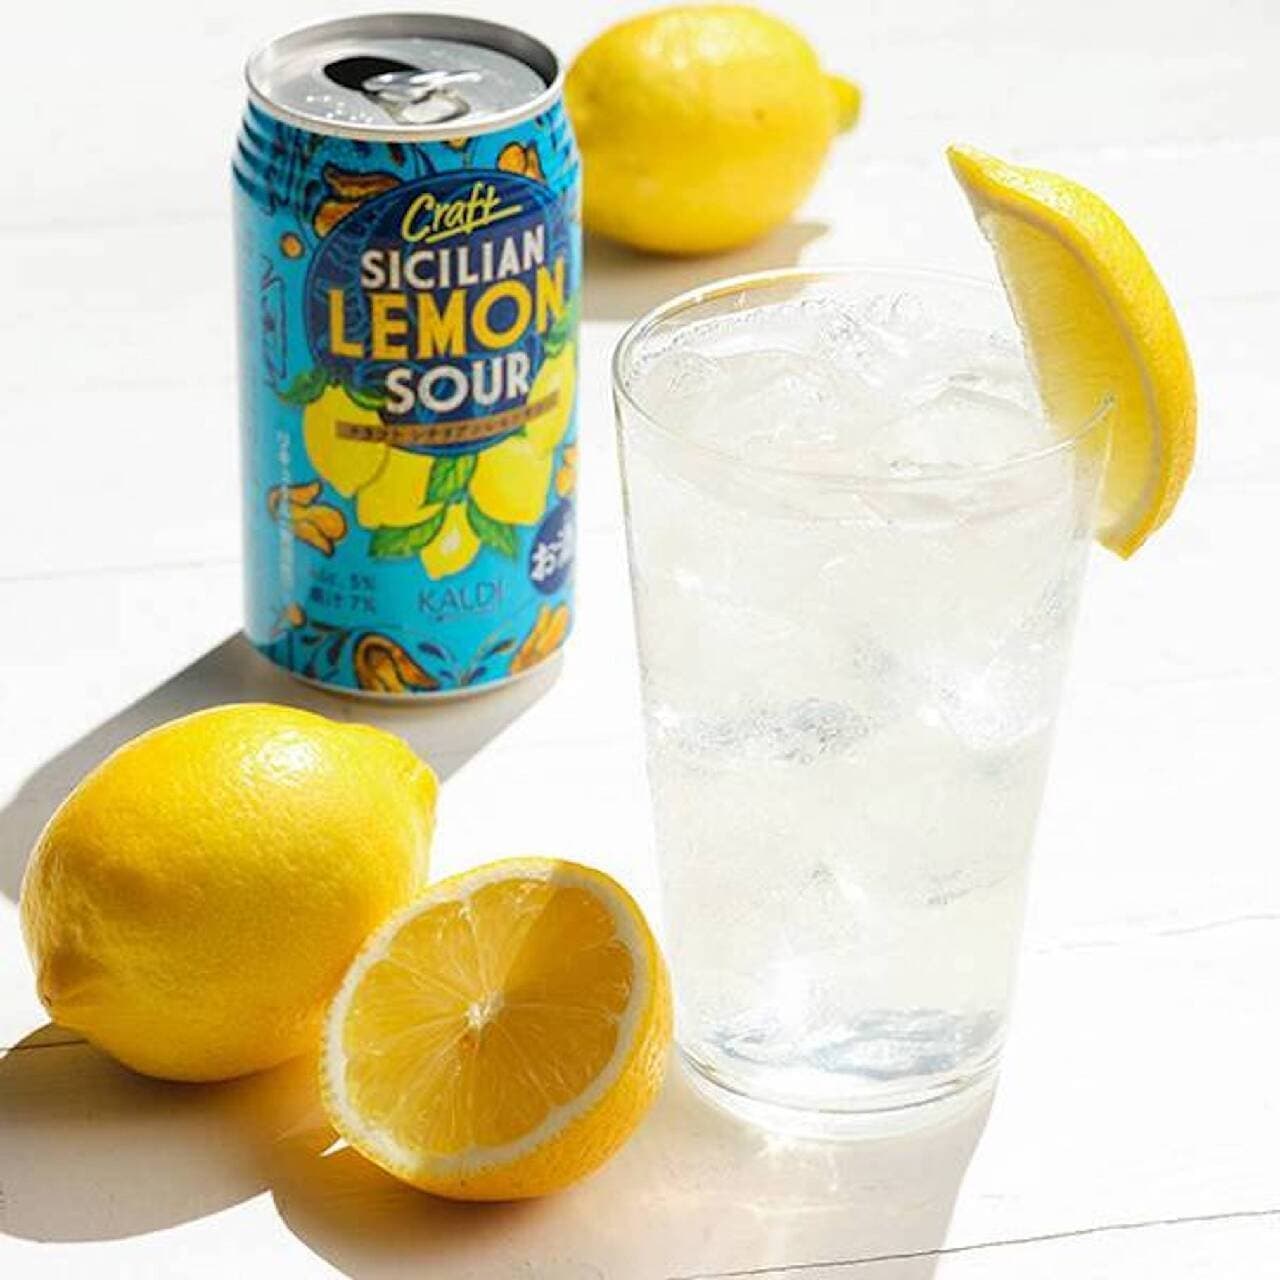 KALDI "[Sake] Craft Sicilian Lemon Sour".